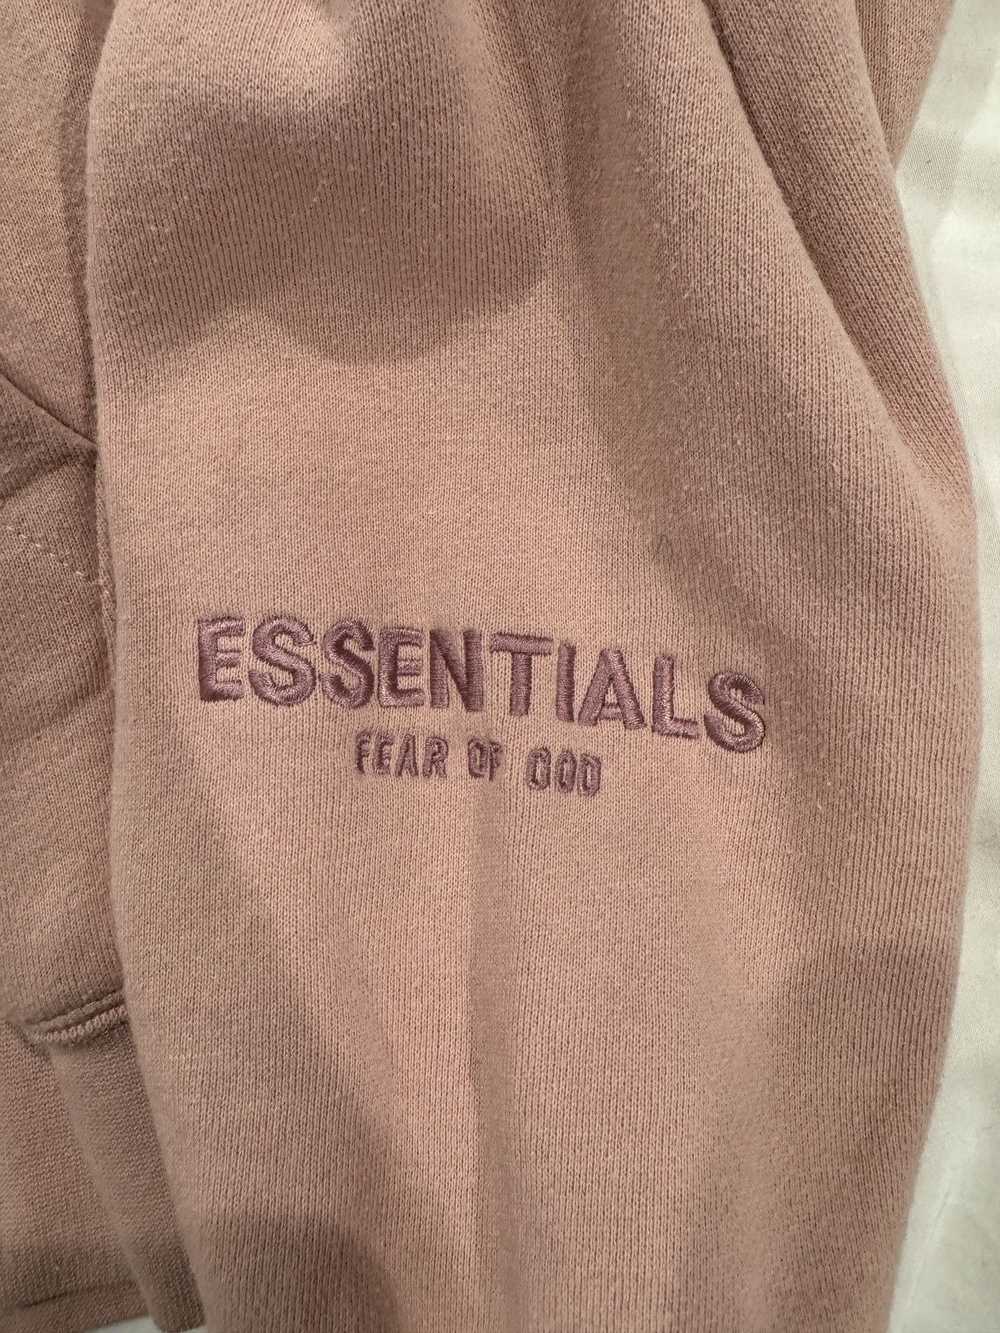 Essentials × Fear of God FOG Essentials Blush Hoo… - image 5